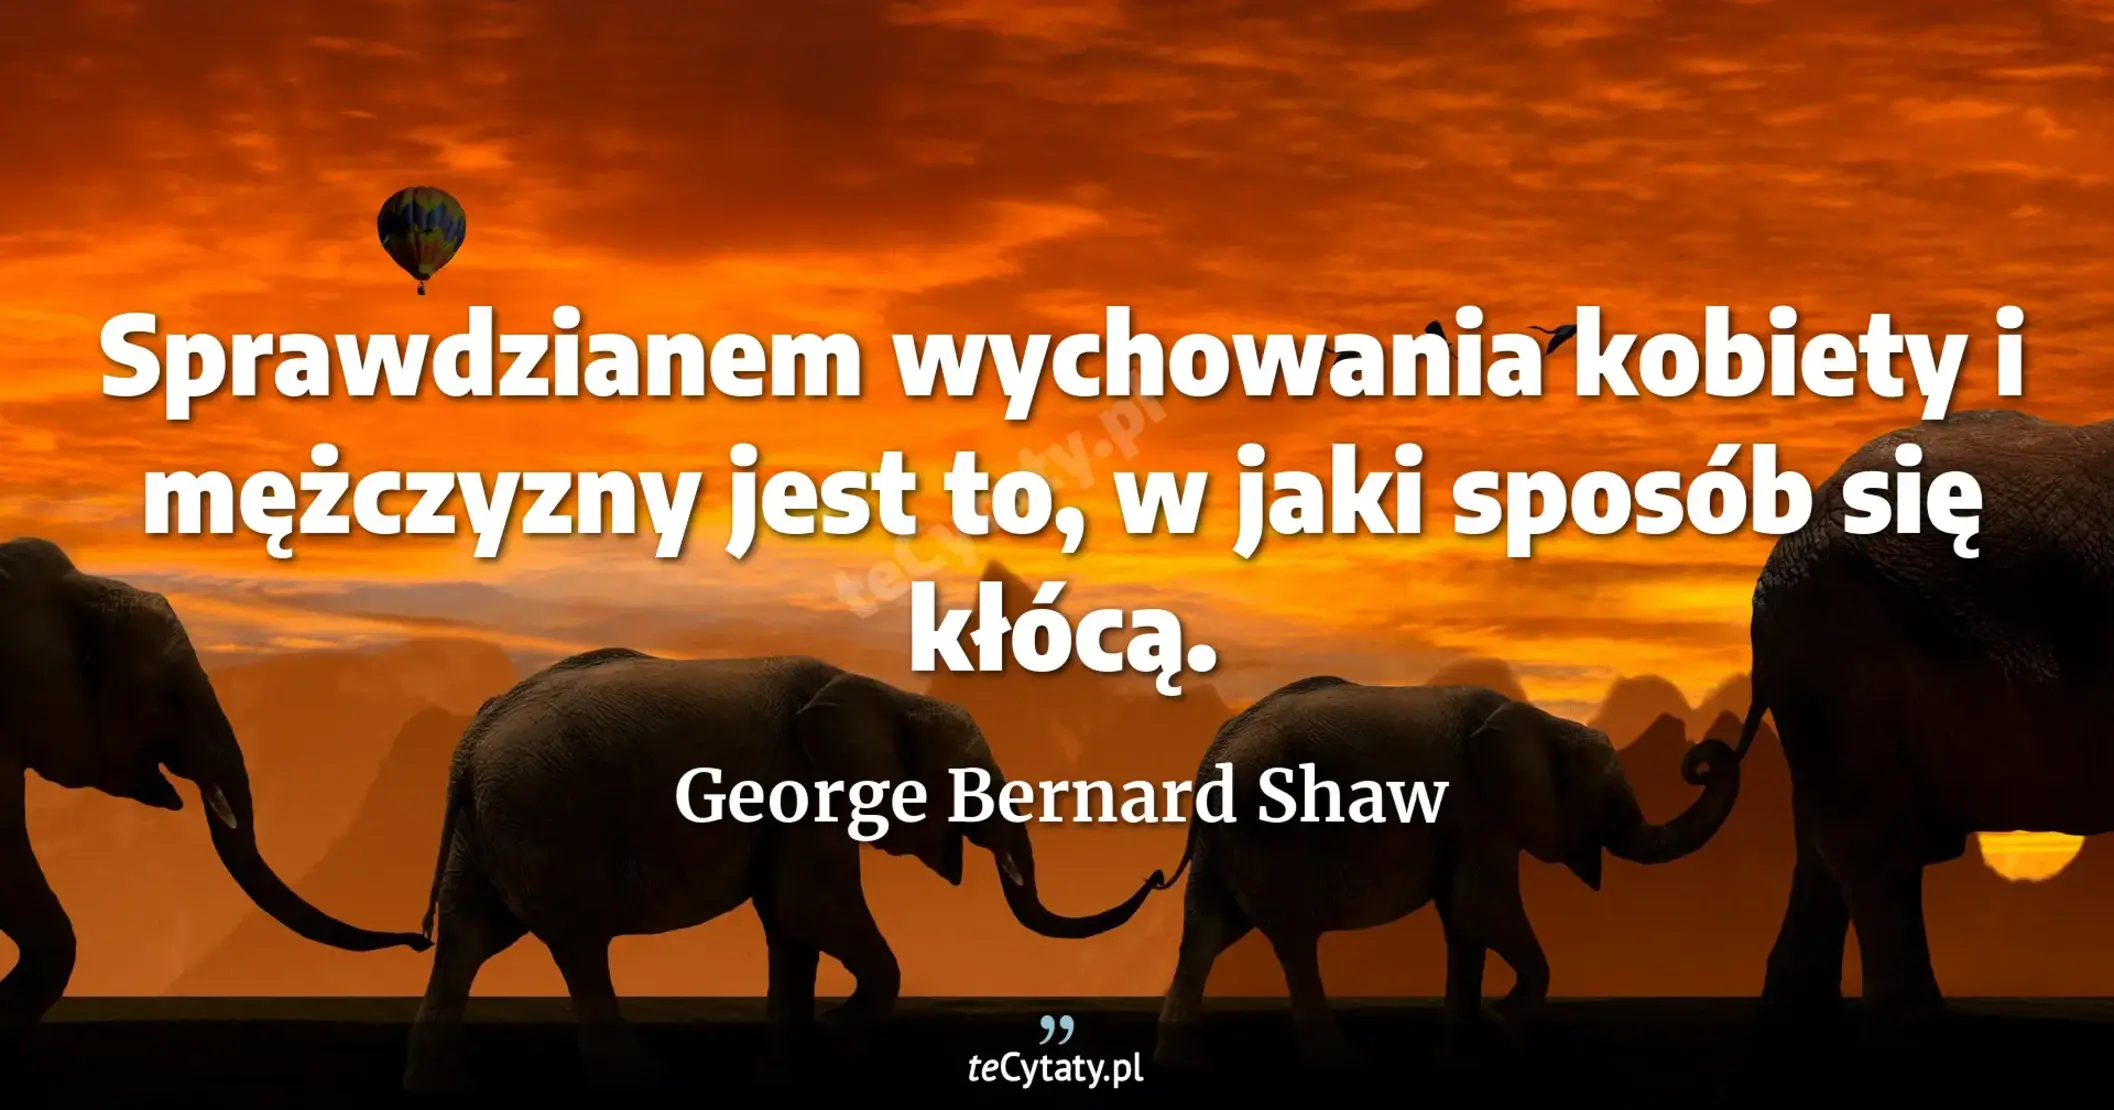 Sprawdzianem wychowania kobiety i mężczyzny jest to, w jaki sposób się kłócą. - George Bernard Shaw